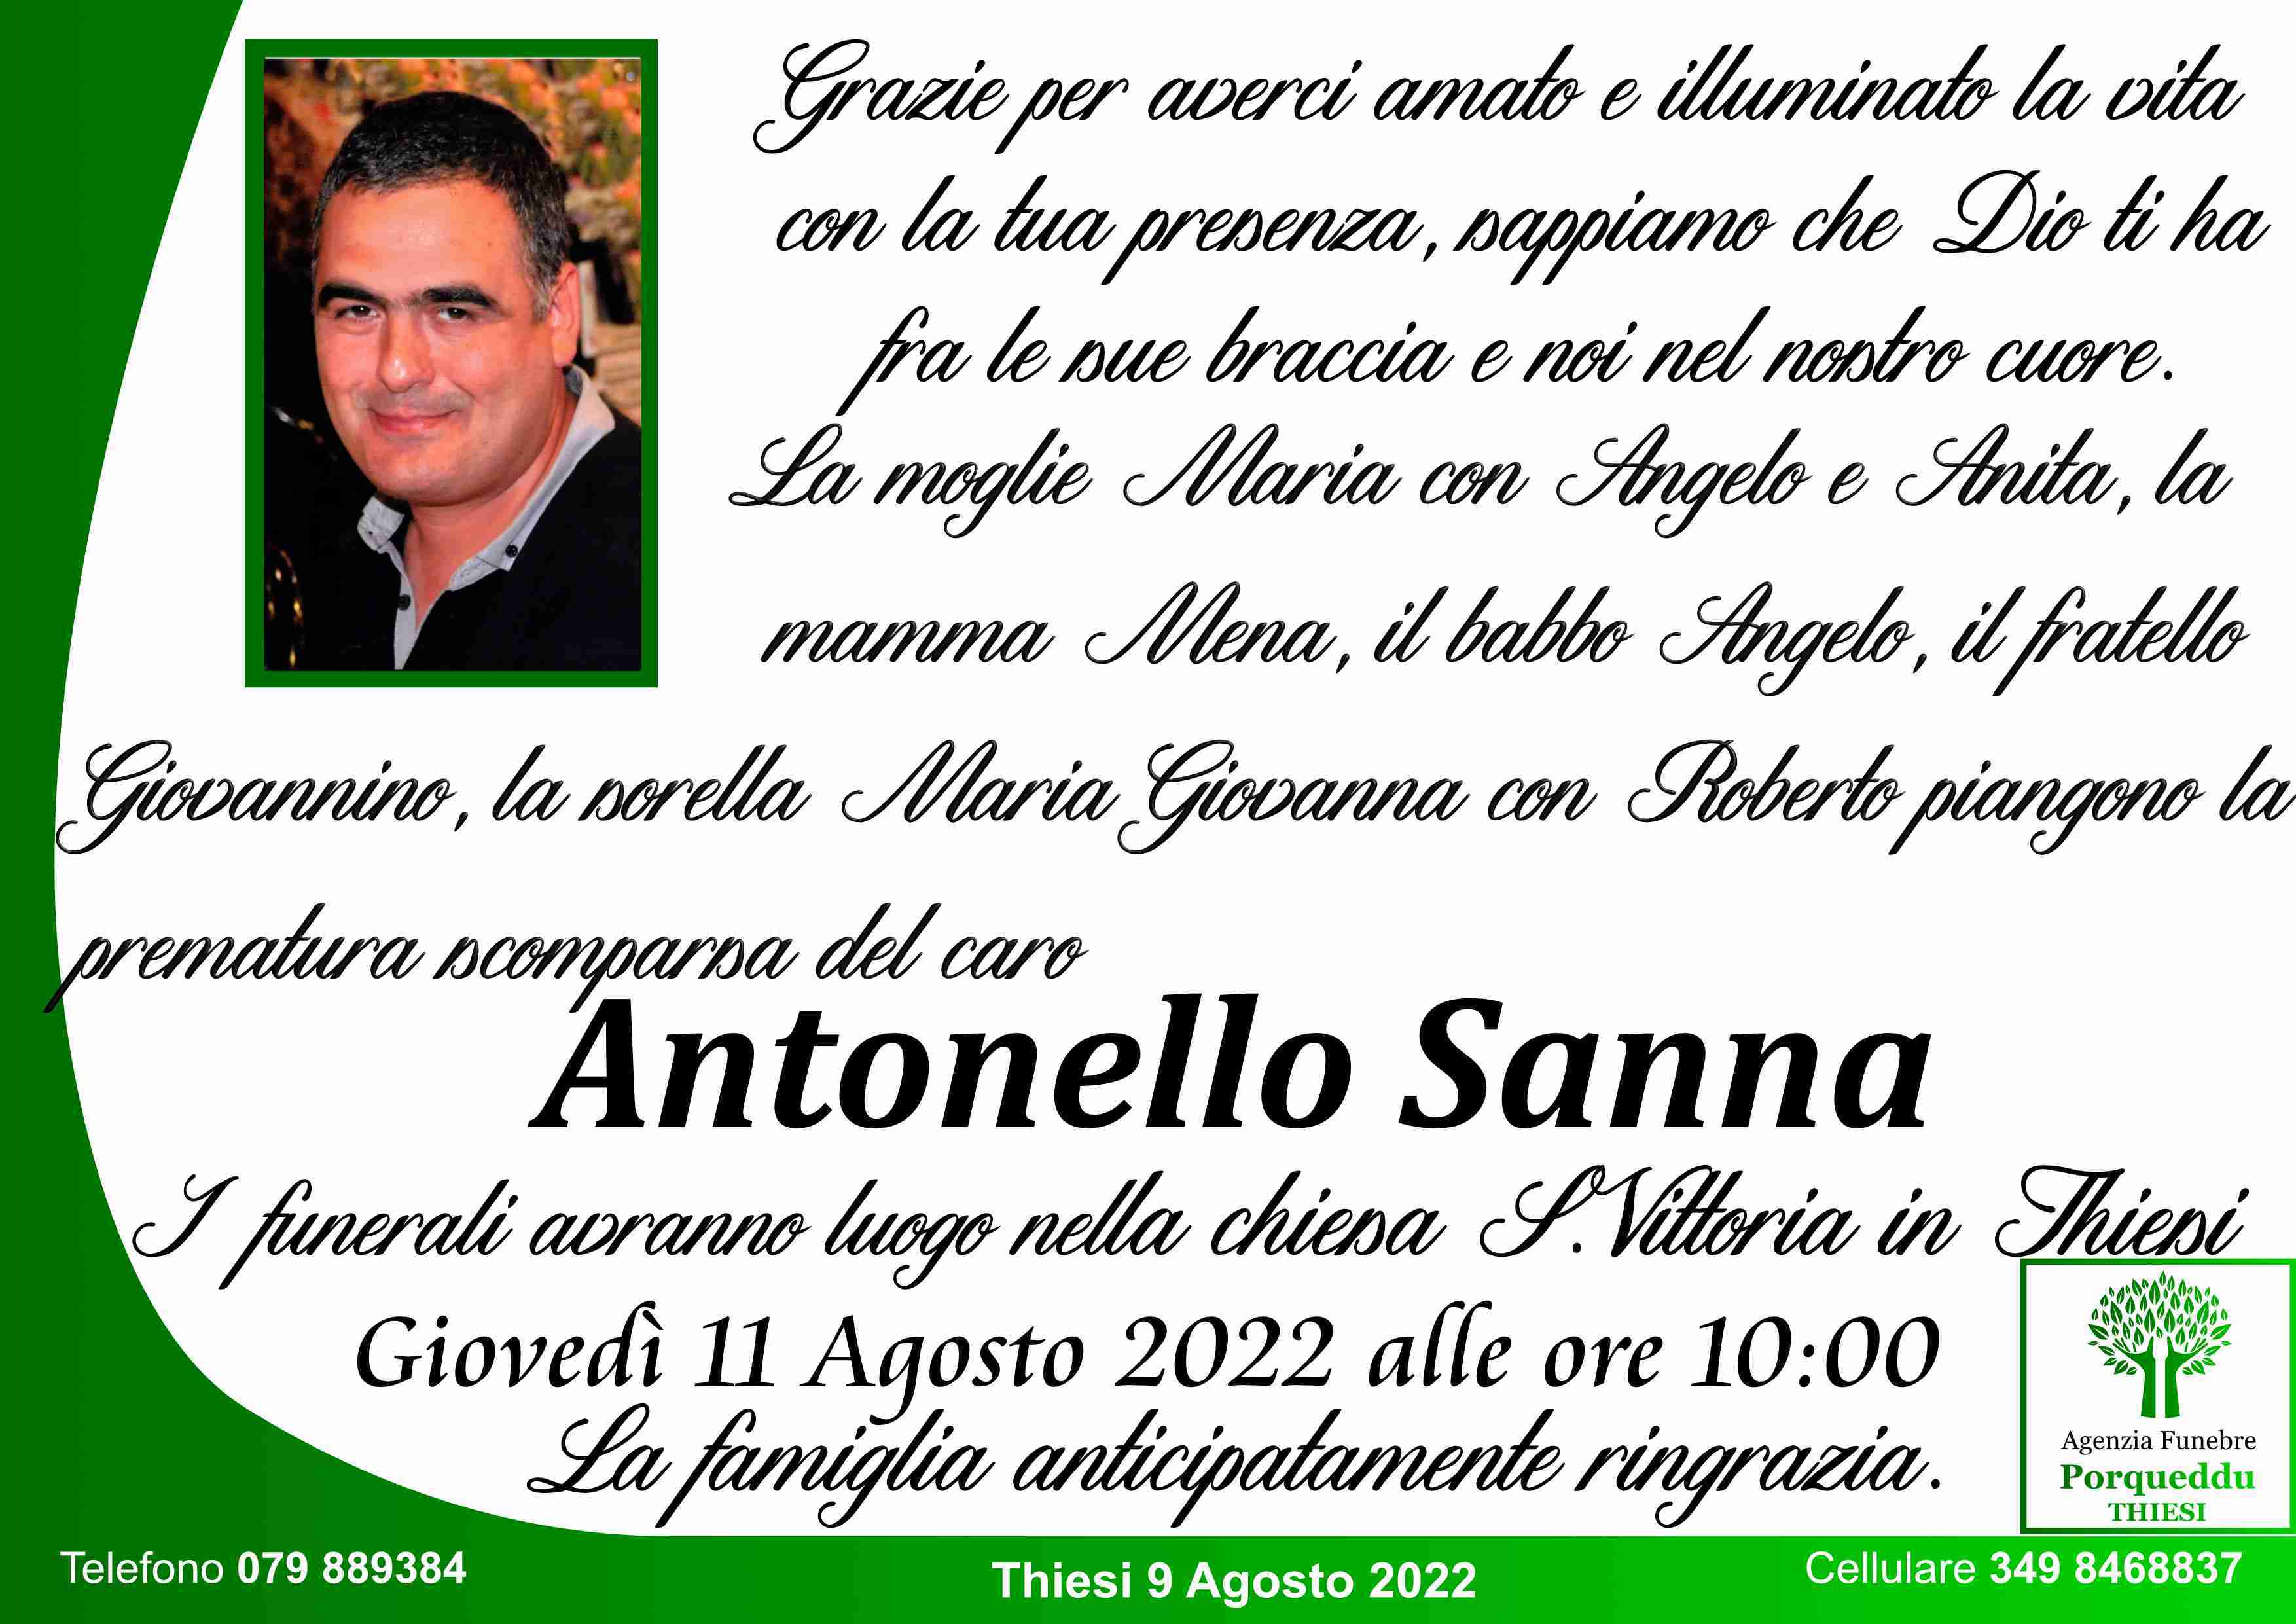 Antonello Sanna